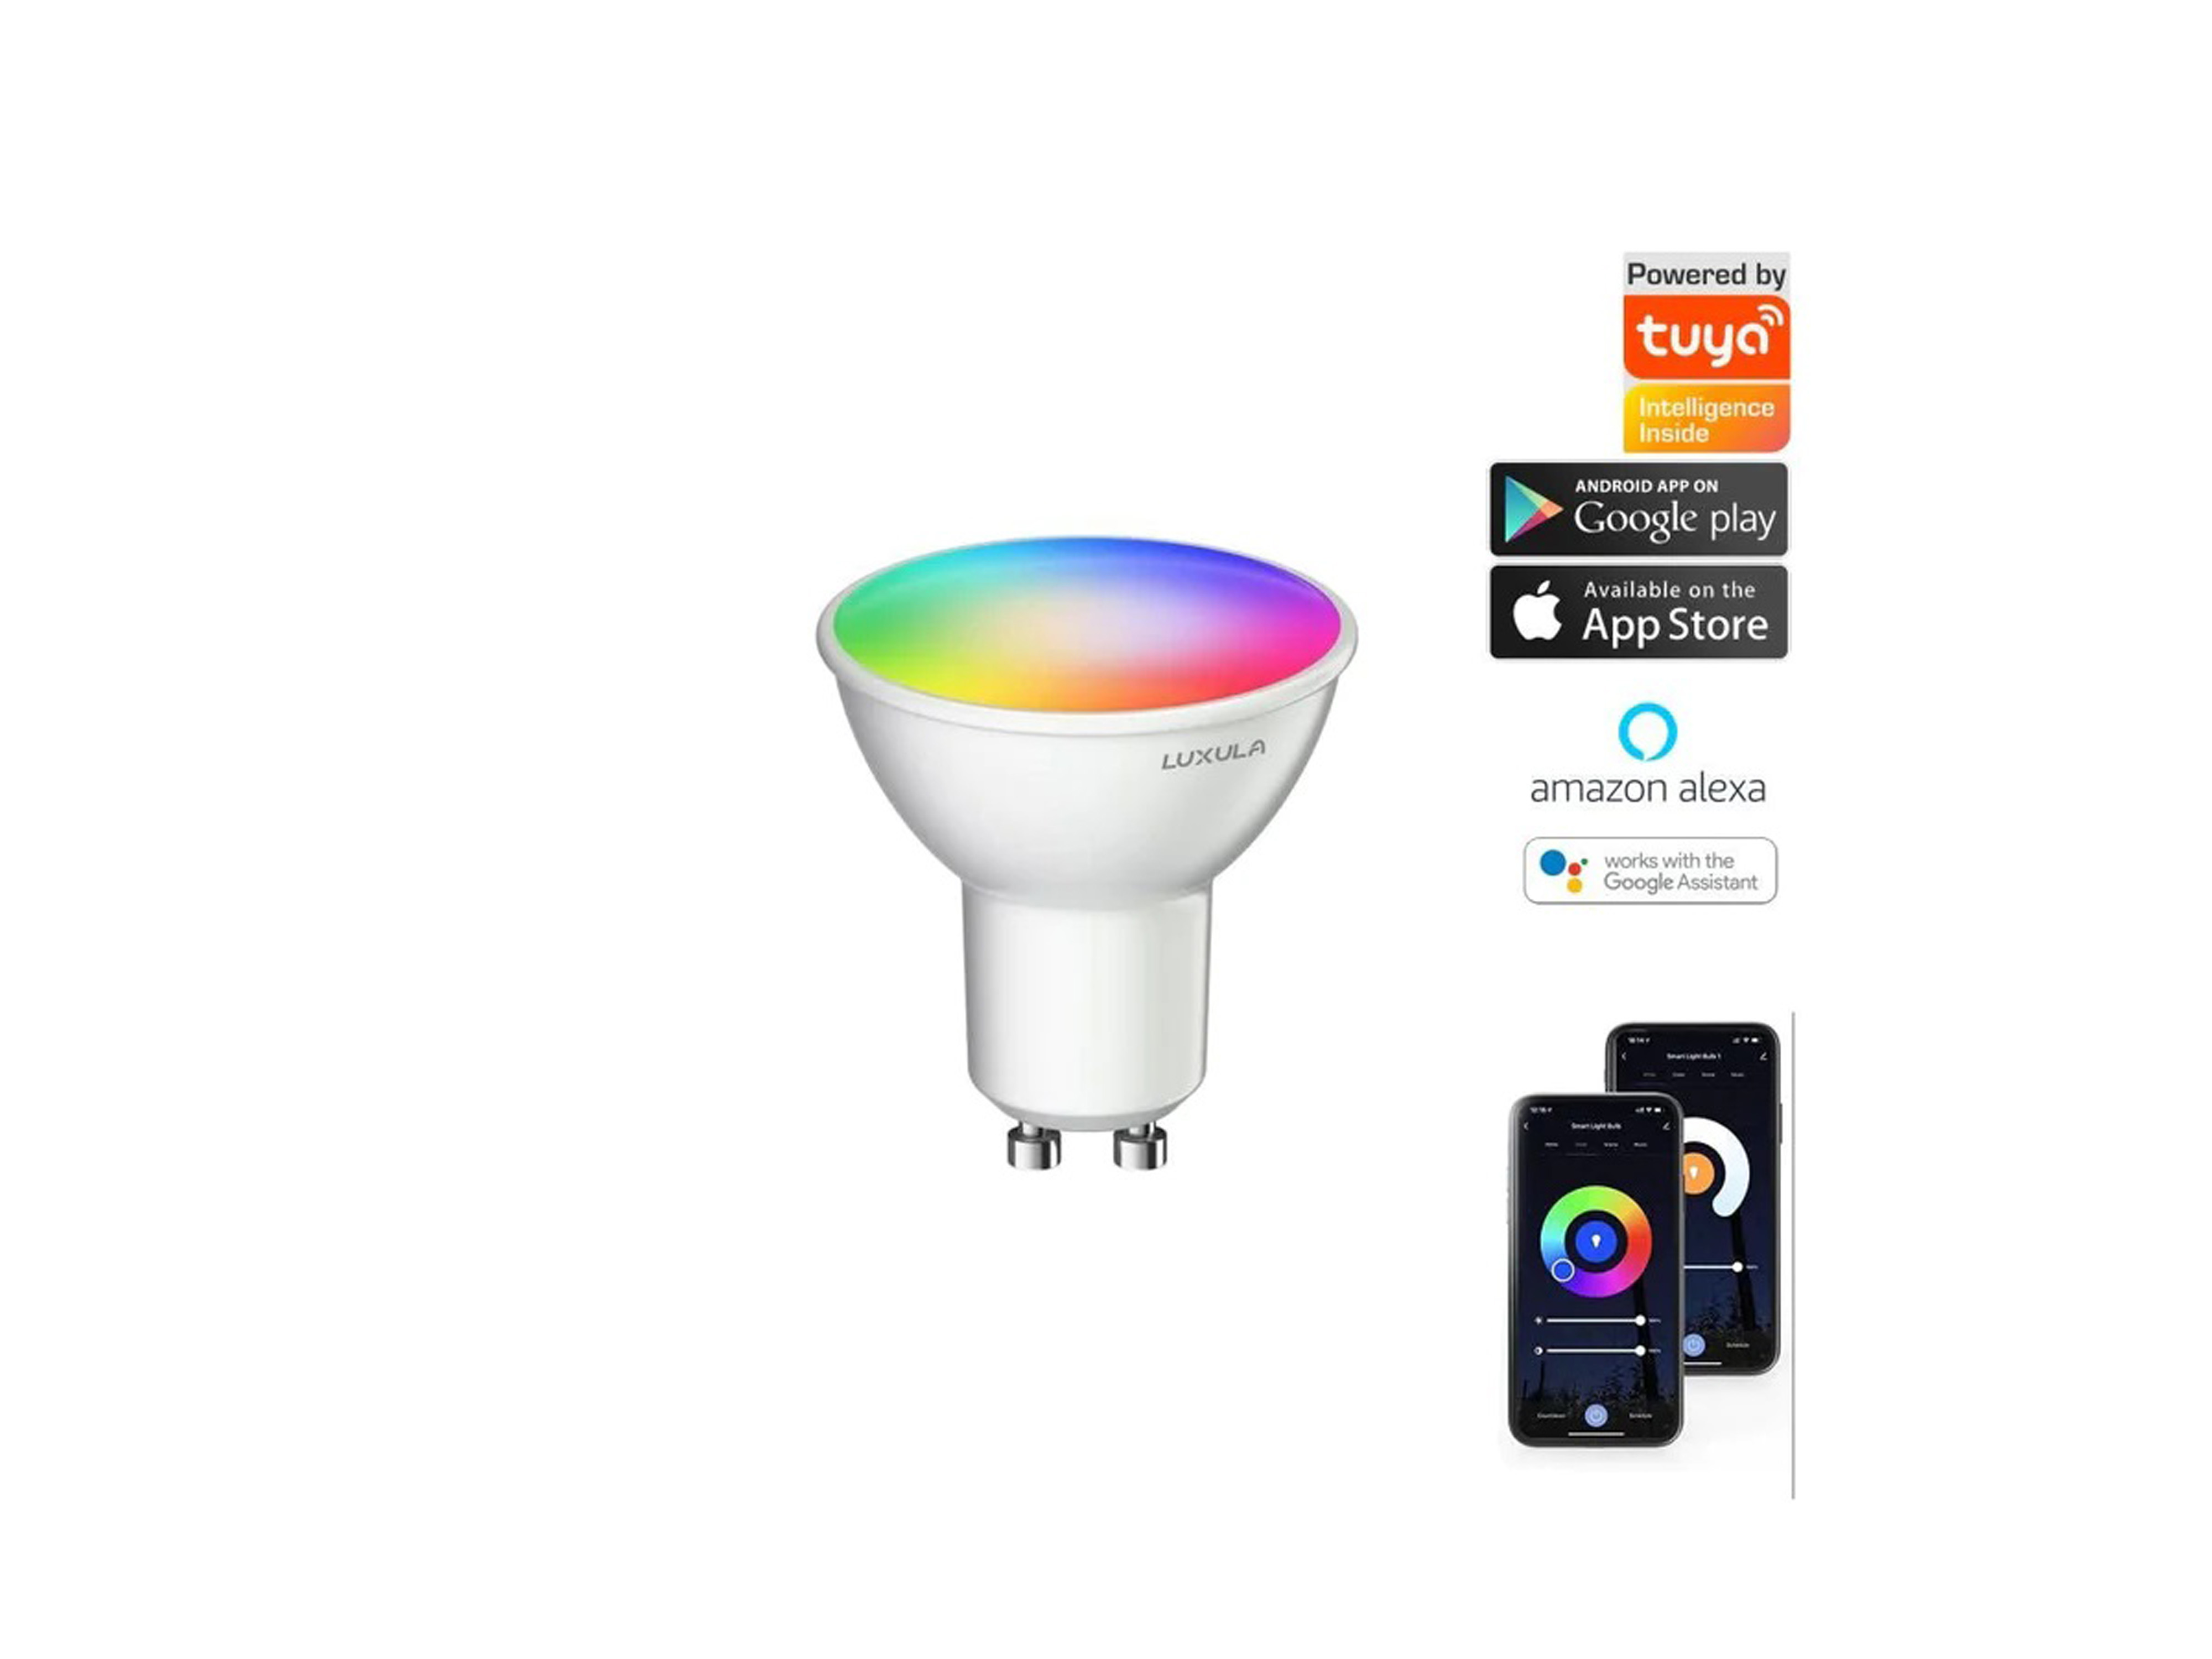 LUXULA LED-Lampe, Reflektorform, SMART, GU10, EEK: F, 5W, 387lm, RGBTW